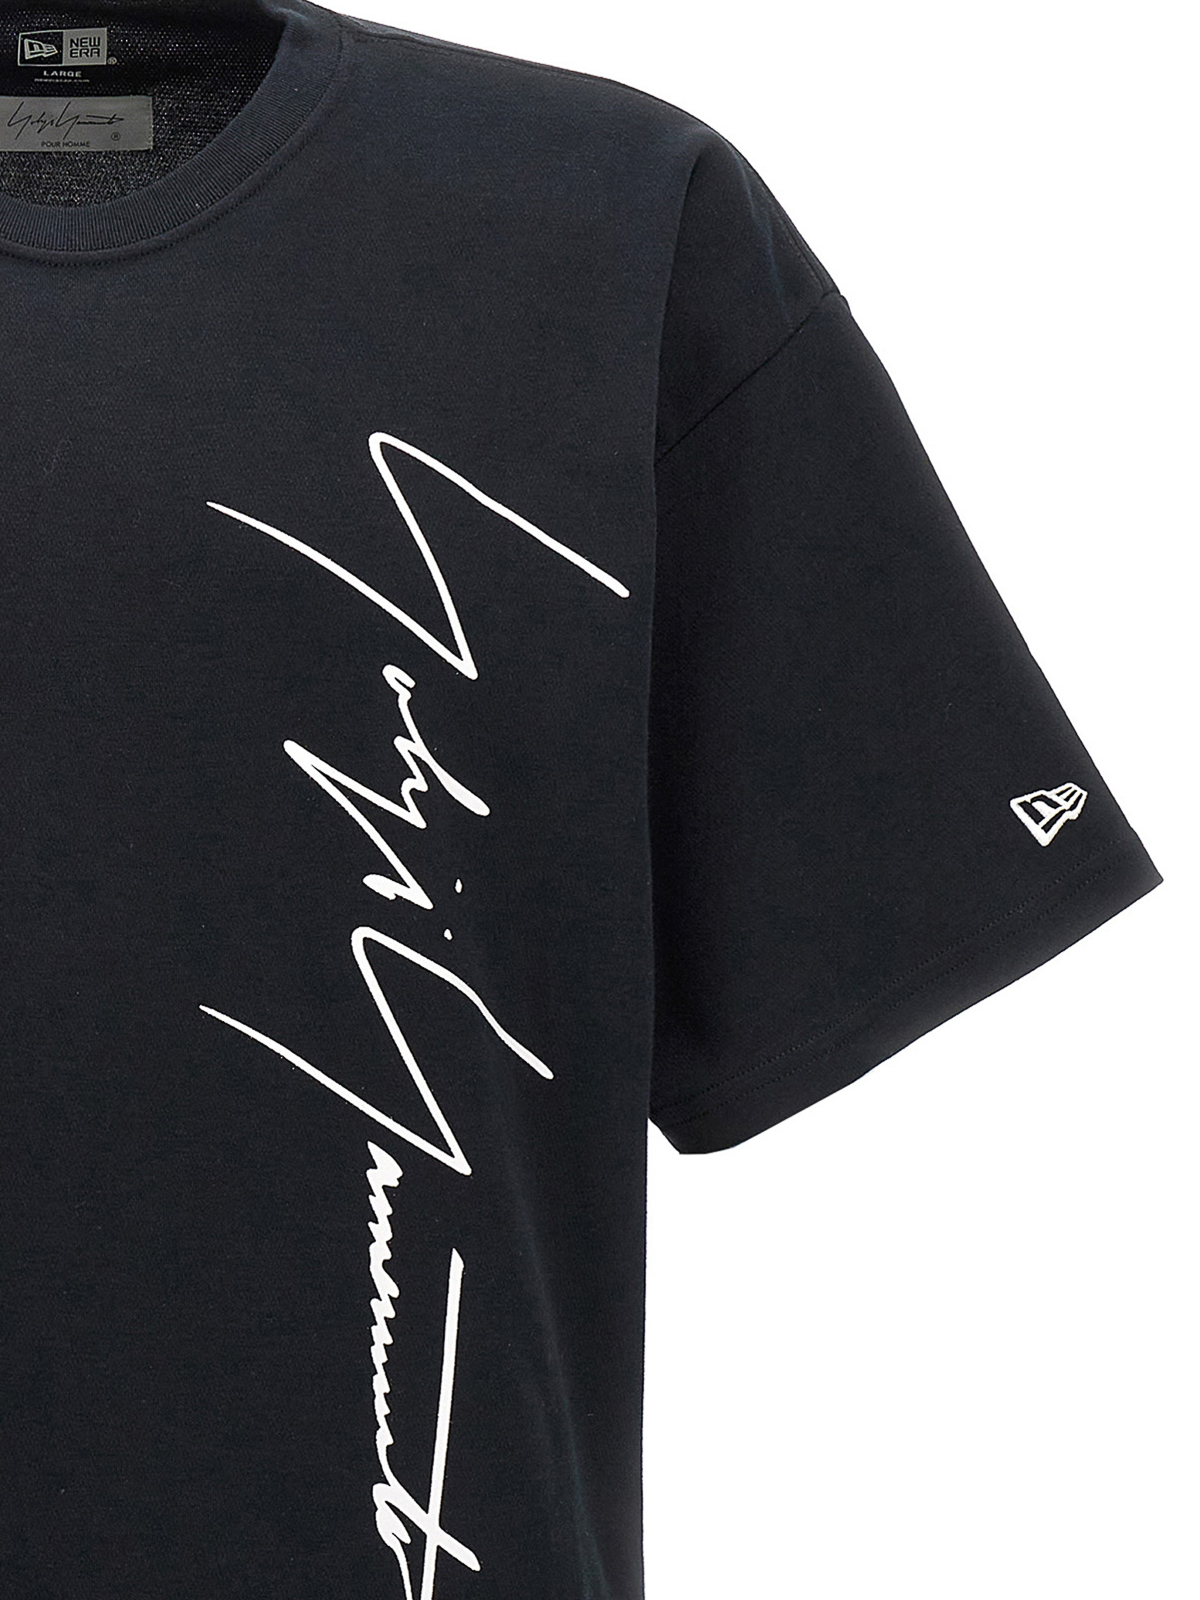 T-shirts Yohji Yamamoto - Yohji homomoto x new era t-shirt